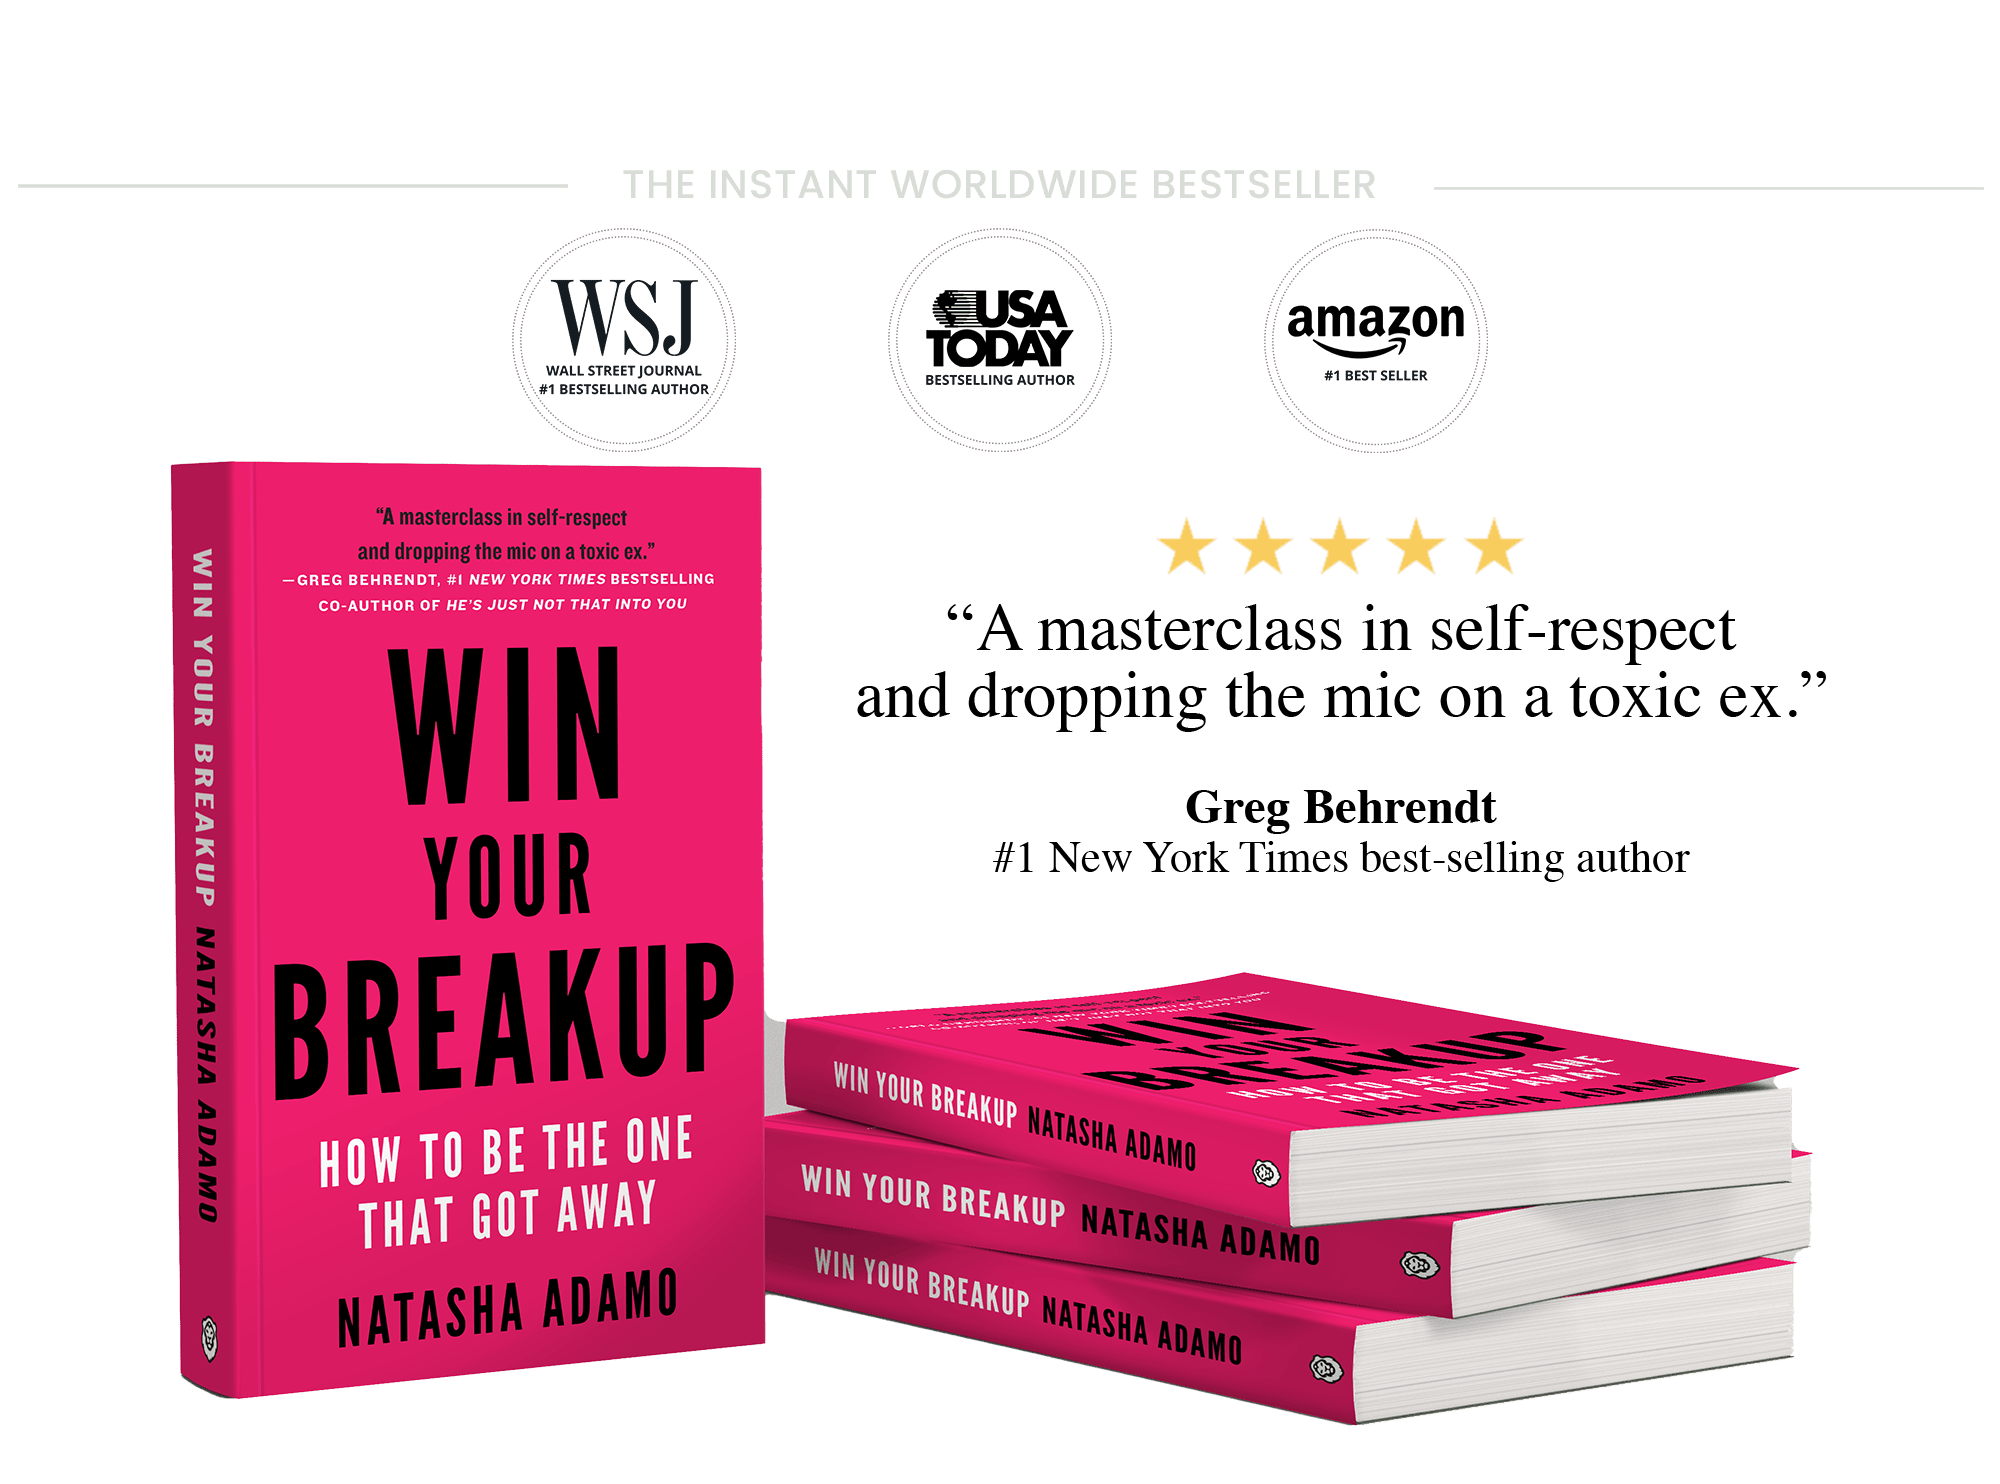 Bestselling Book Win Your Breakup By Natasha Adamo